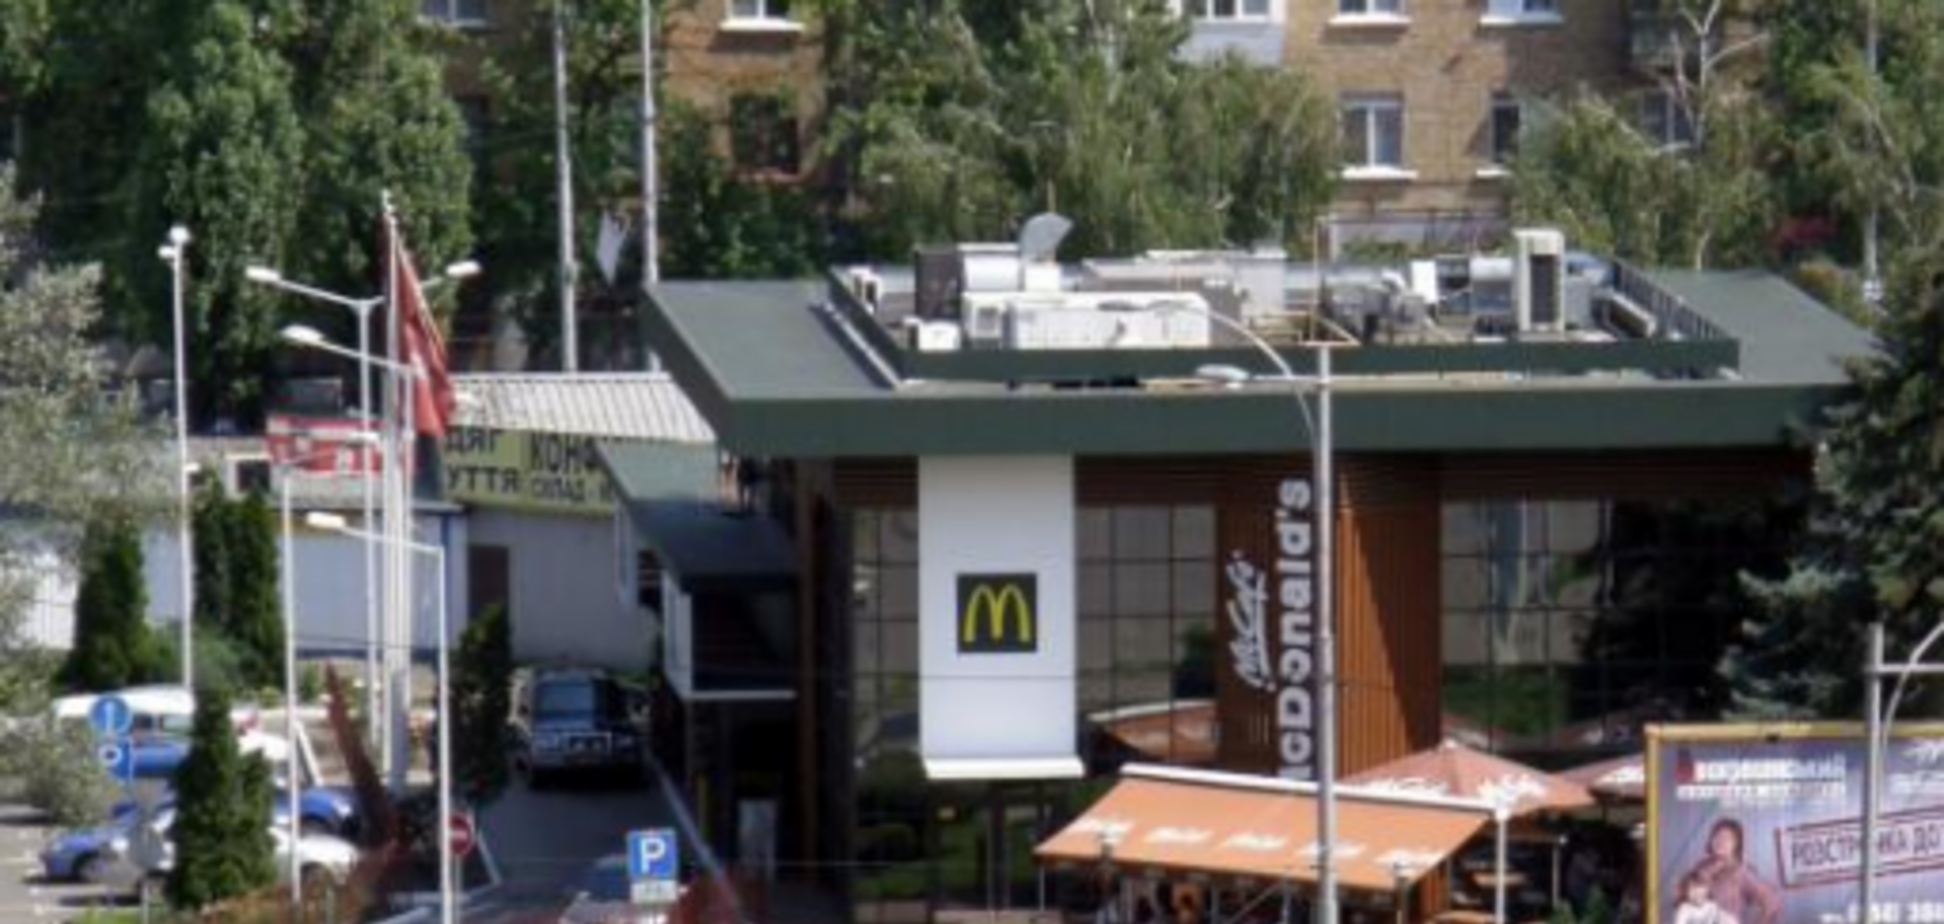 'Думал, что видел все': сеть удивили курьеры на лошади у McDonalds в Киеве